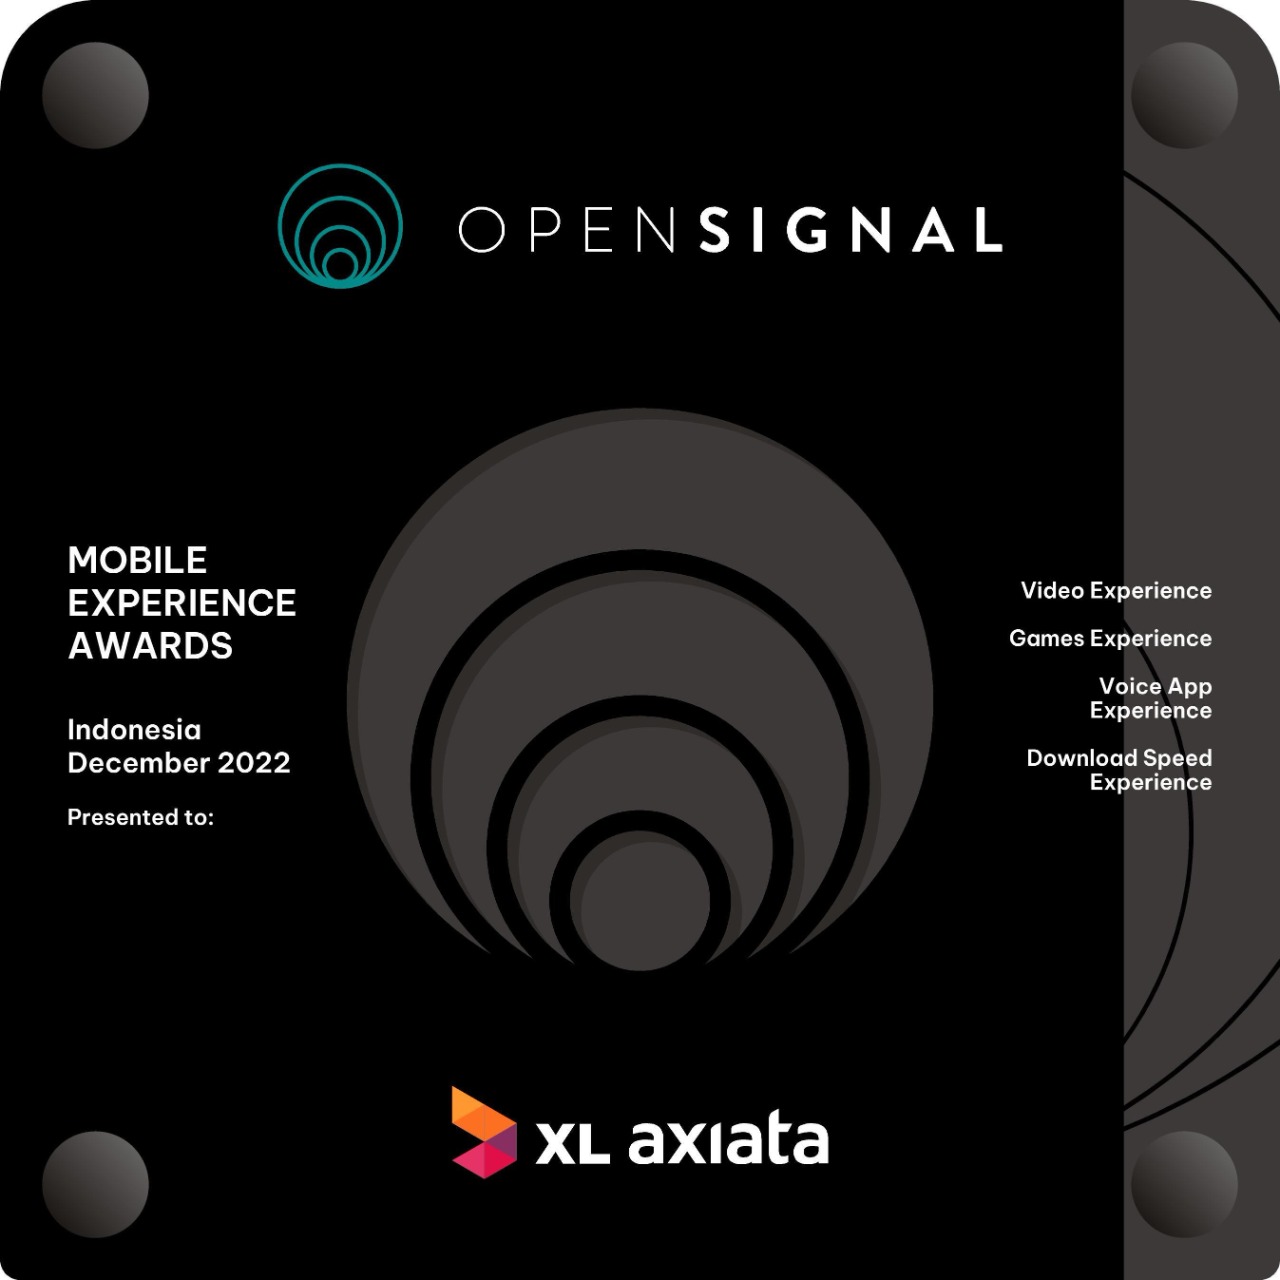 XL Axiata Kantongi 4 Kategori Opensignal Award Desember 2022